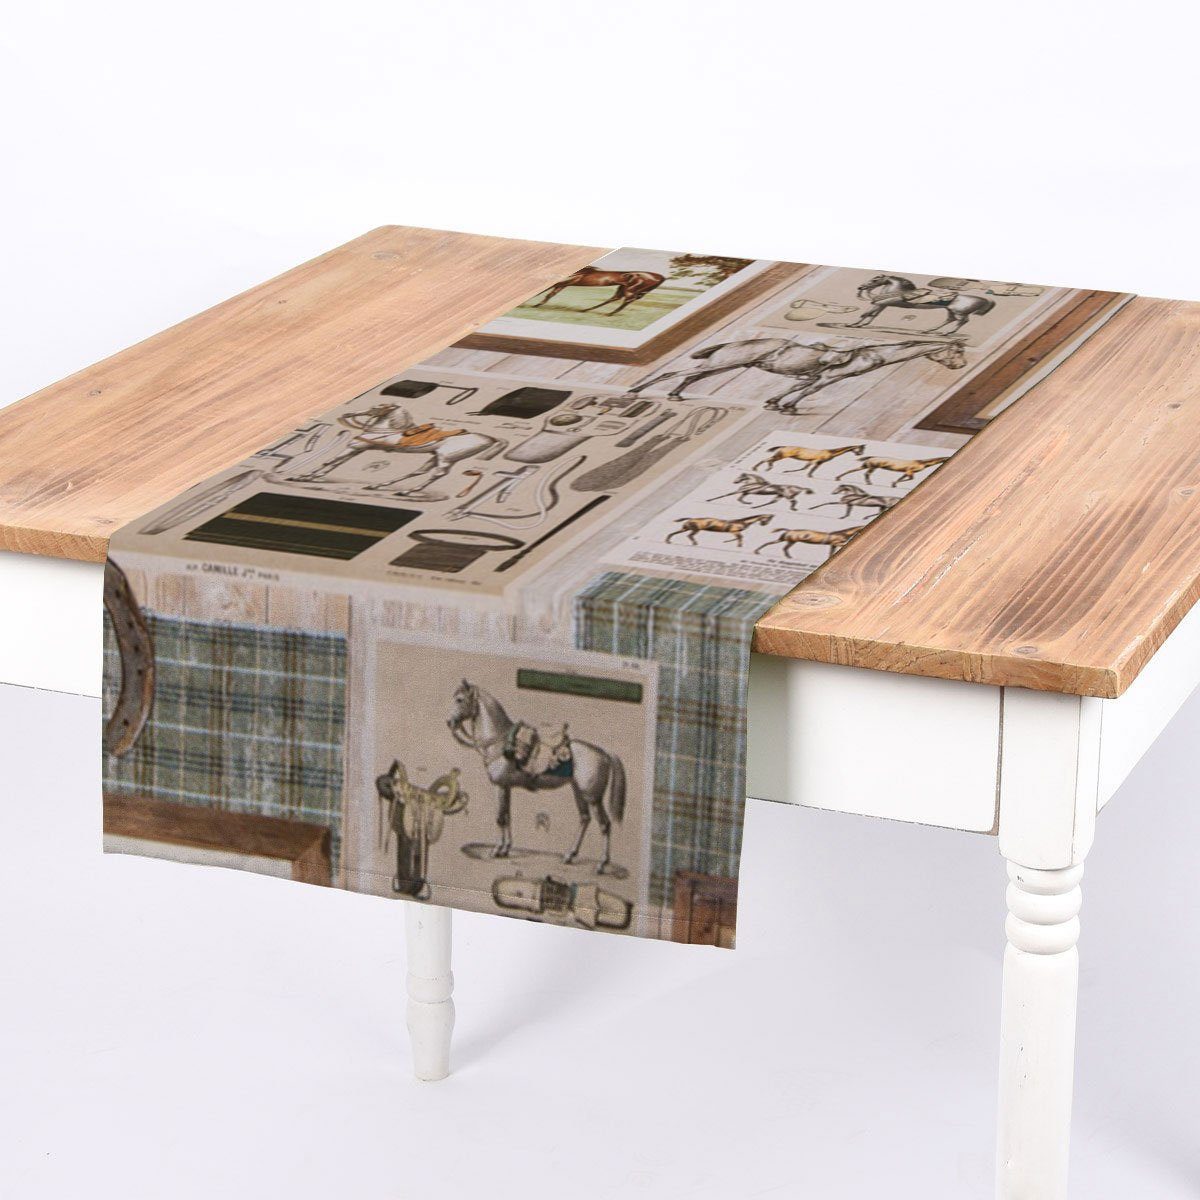 SCHÖNER LEBEN. Tischläufer SCHÖNER LEBEN. Tischläufer Vintage Pferdemotive Holzlatten beige brau, handmade